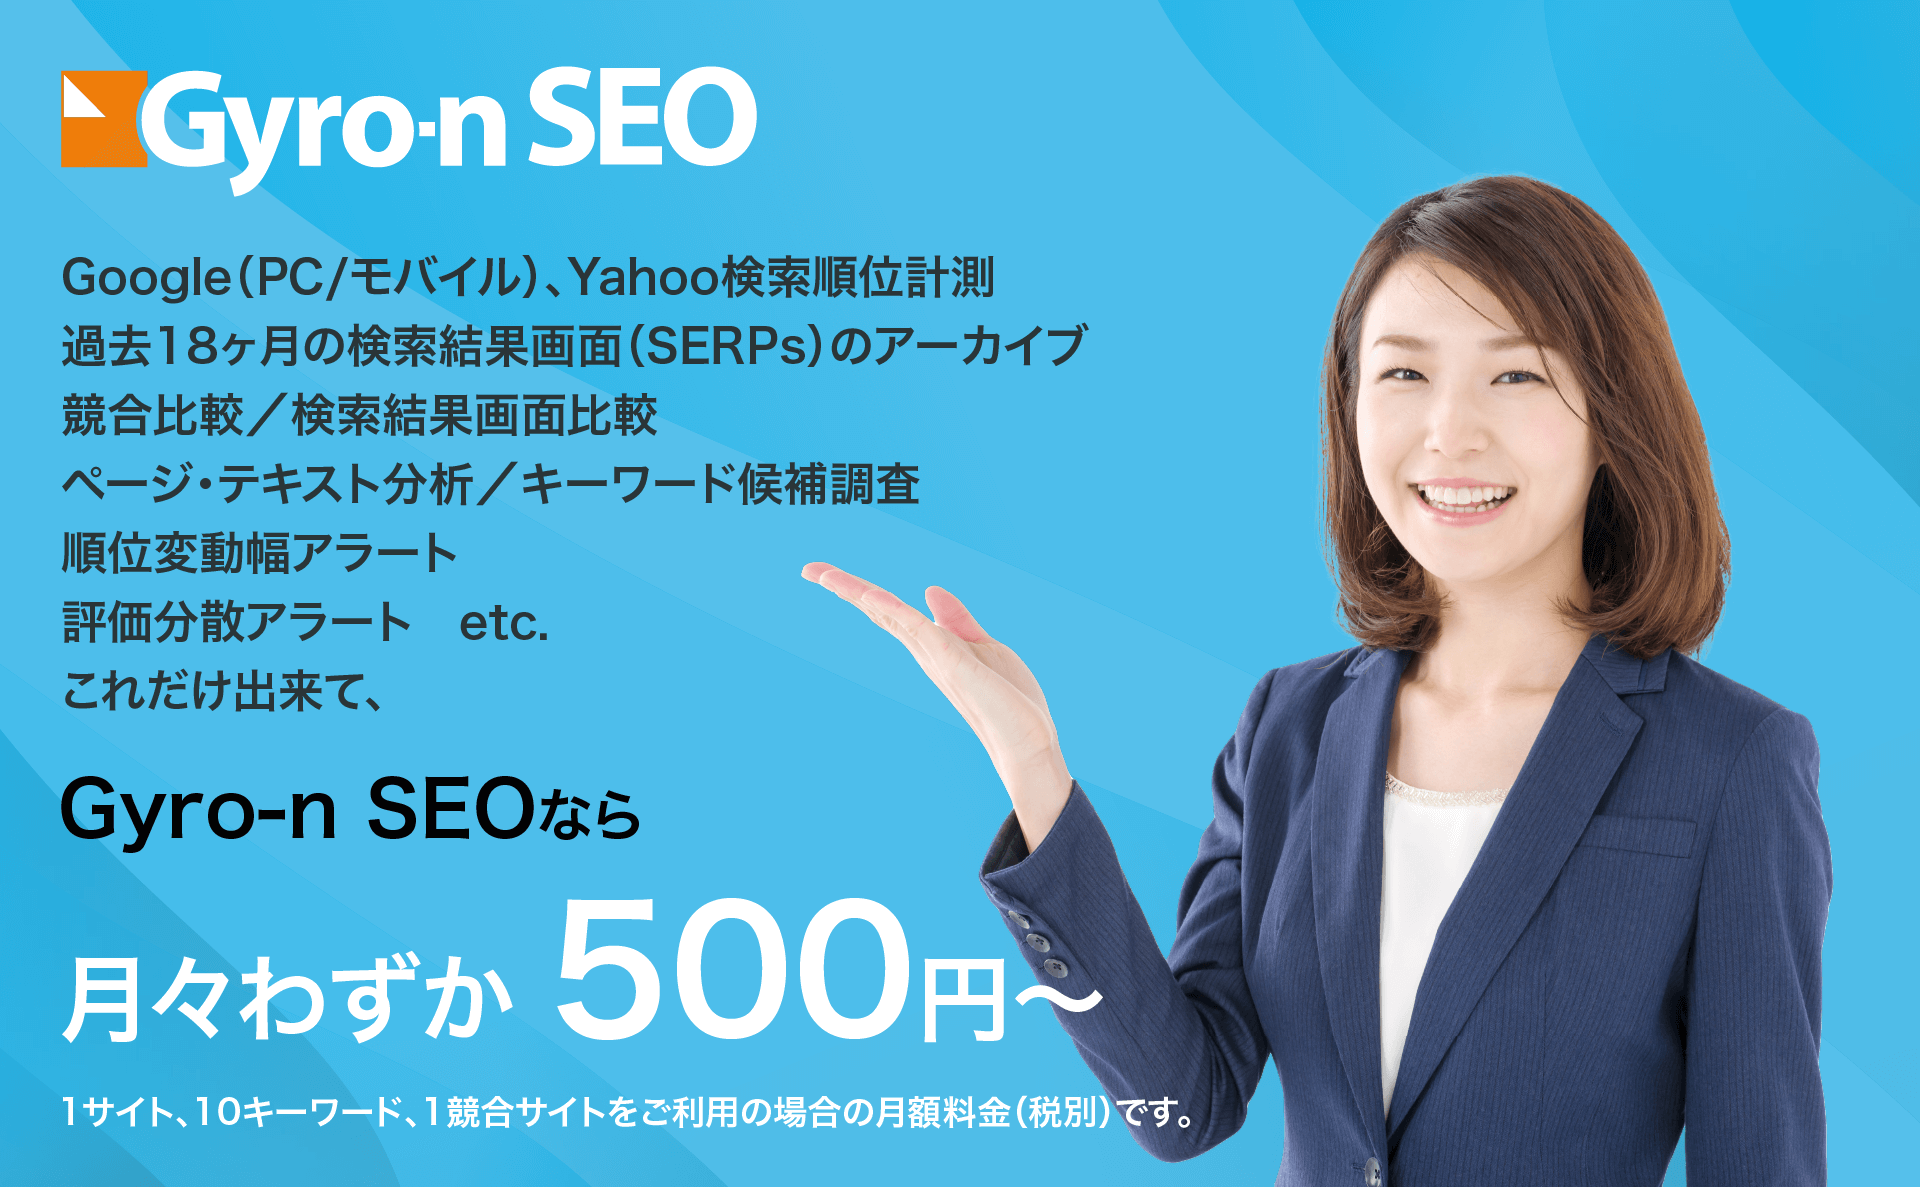 Gyro-n SEOは、1サイト、10キーワード月額500円から利用できます。